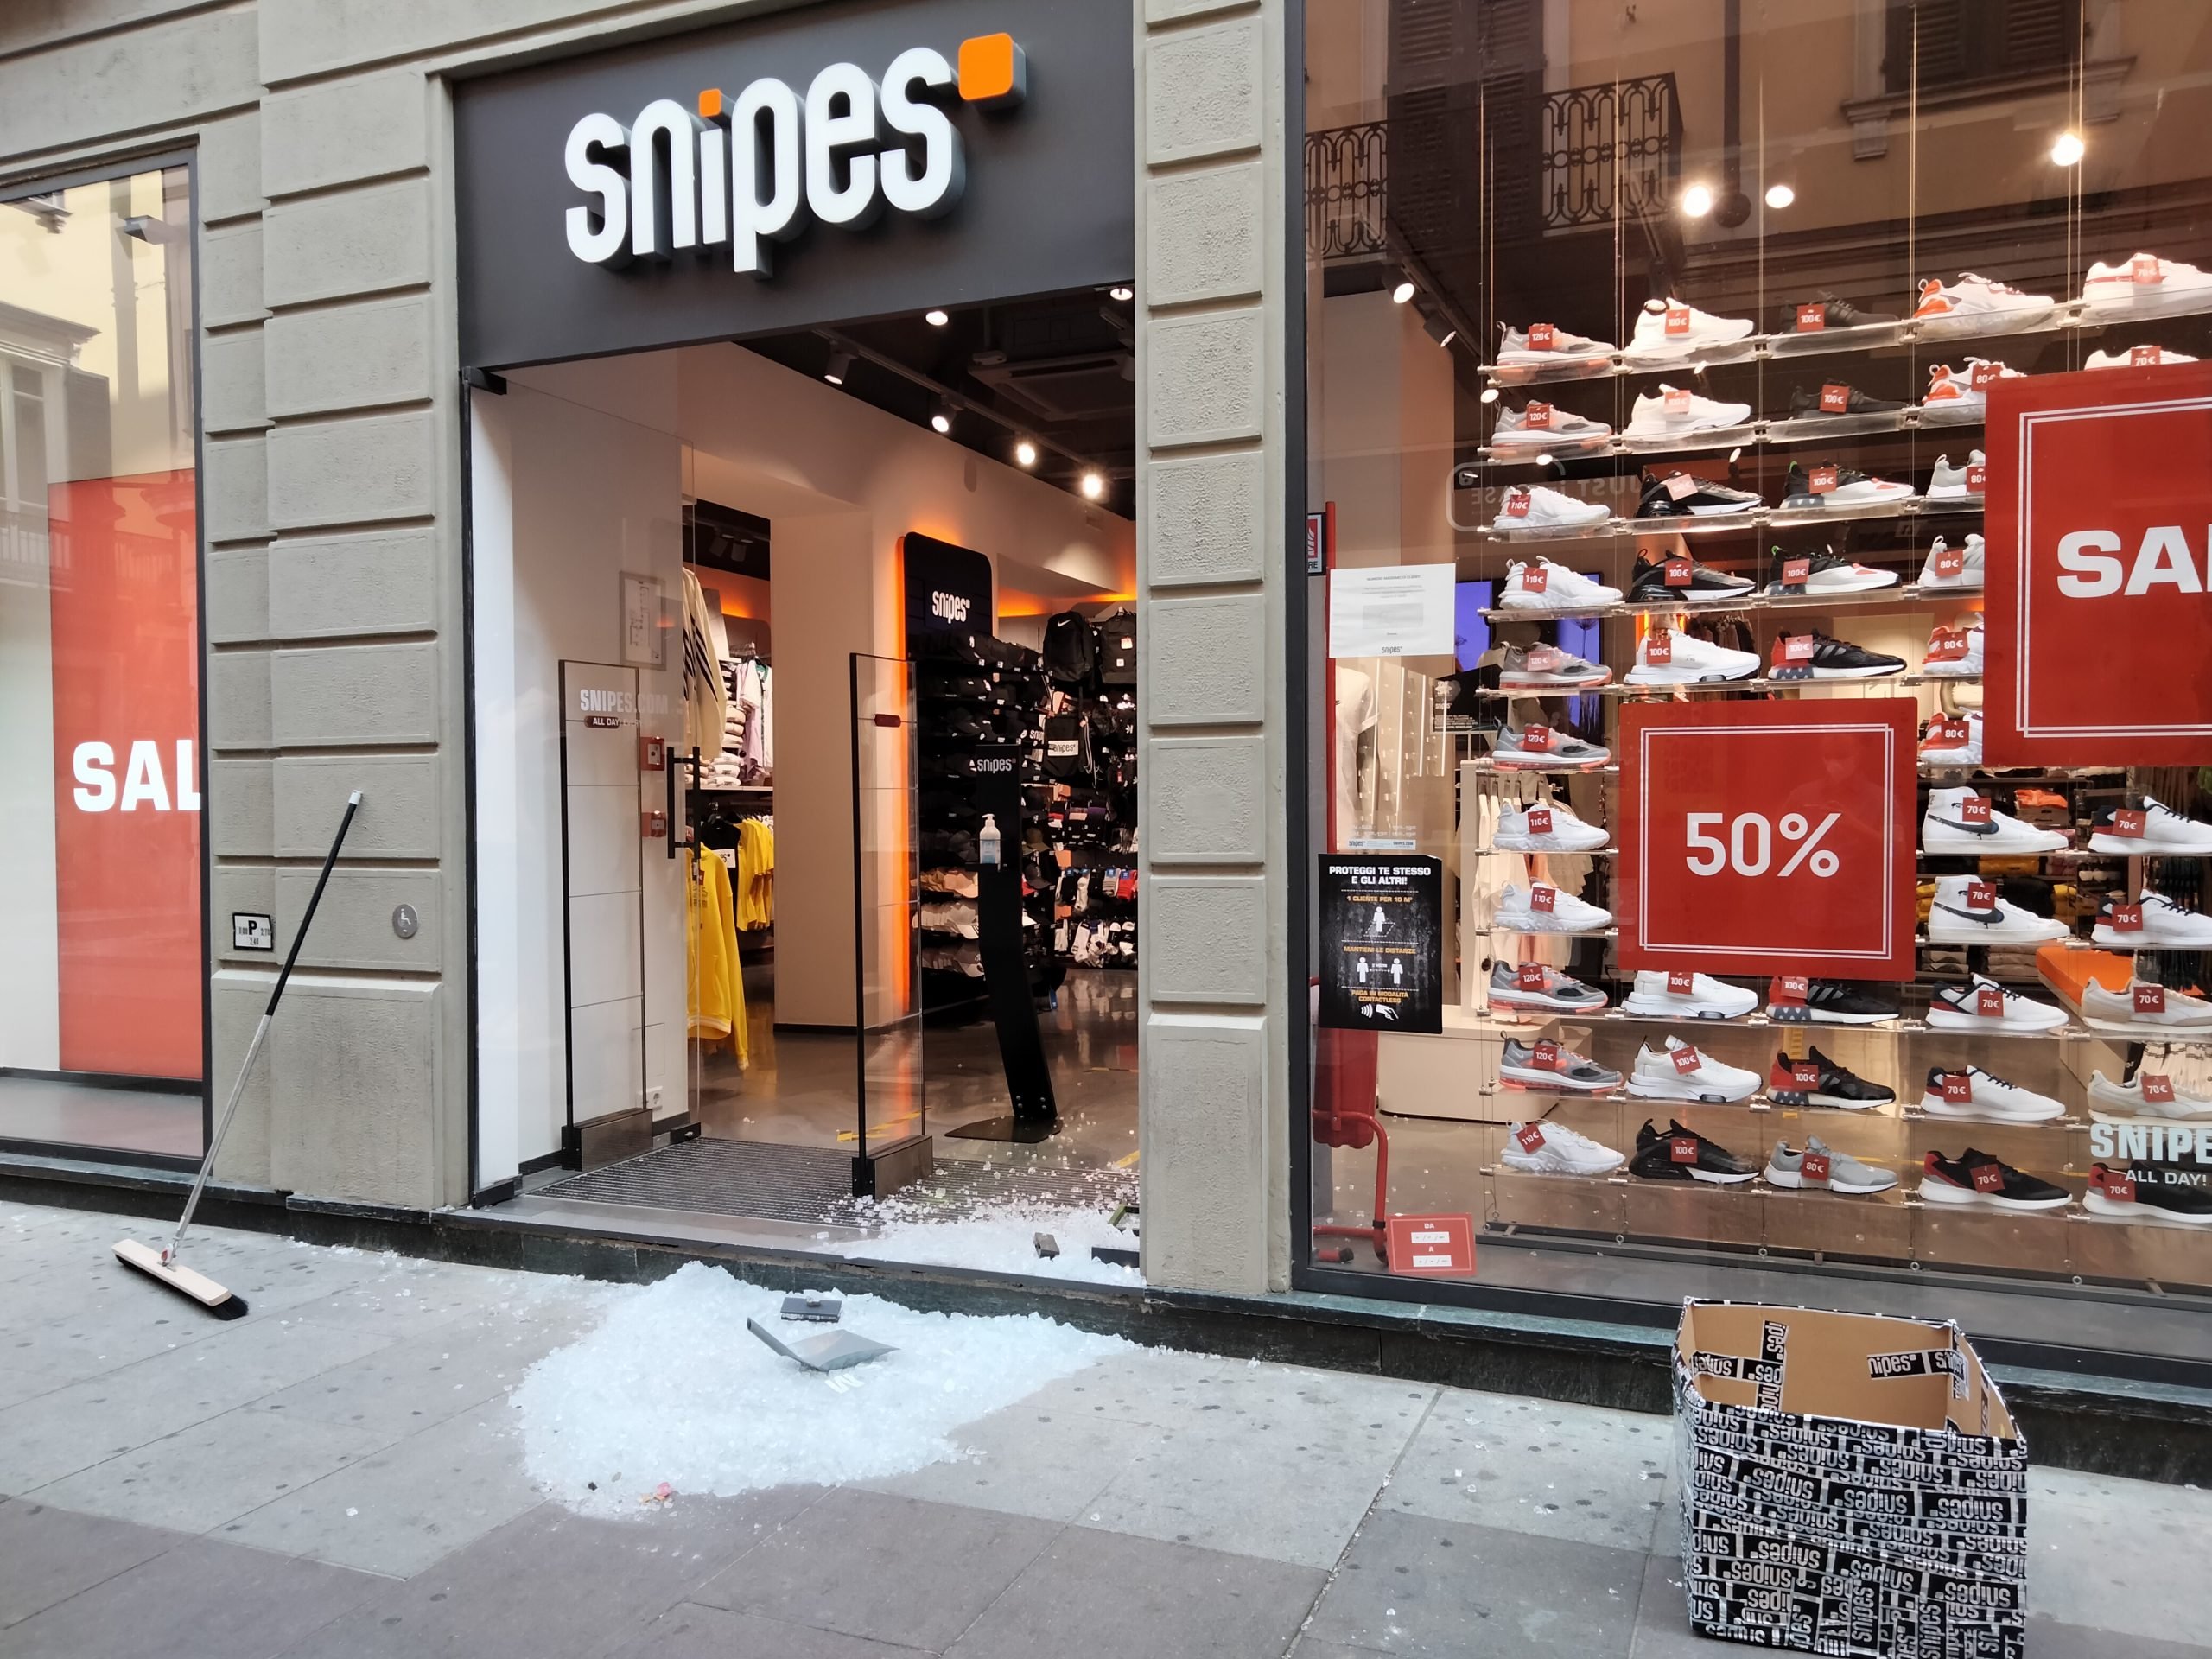 Spaccata notturna in corso Roma: colpito il negozio Snipes